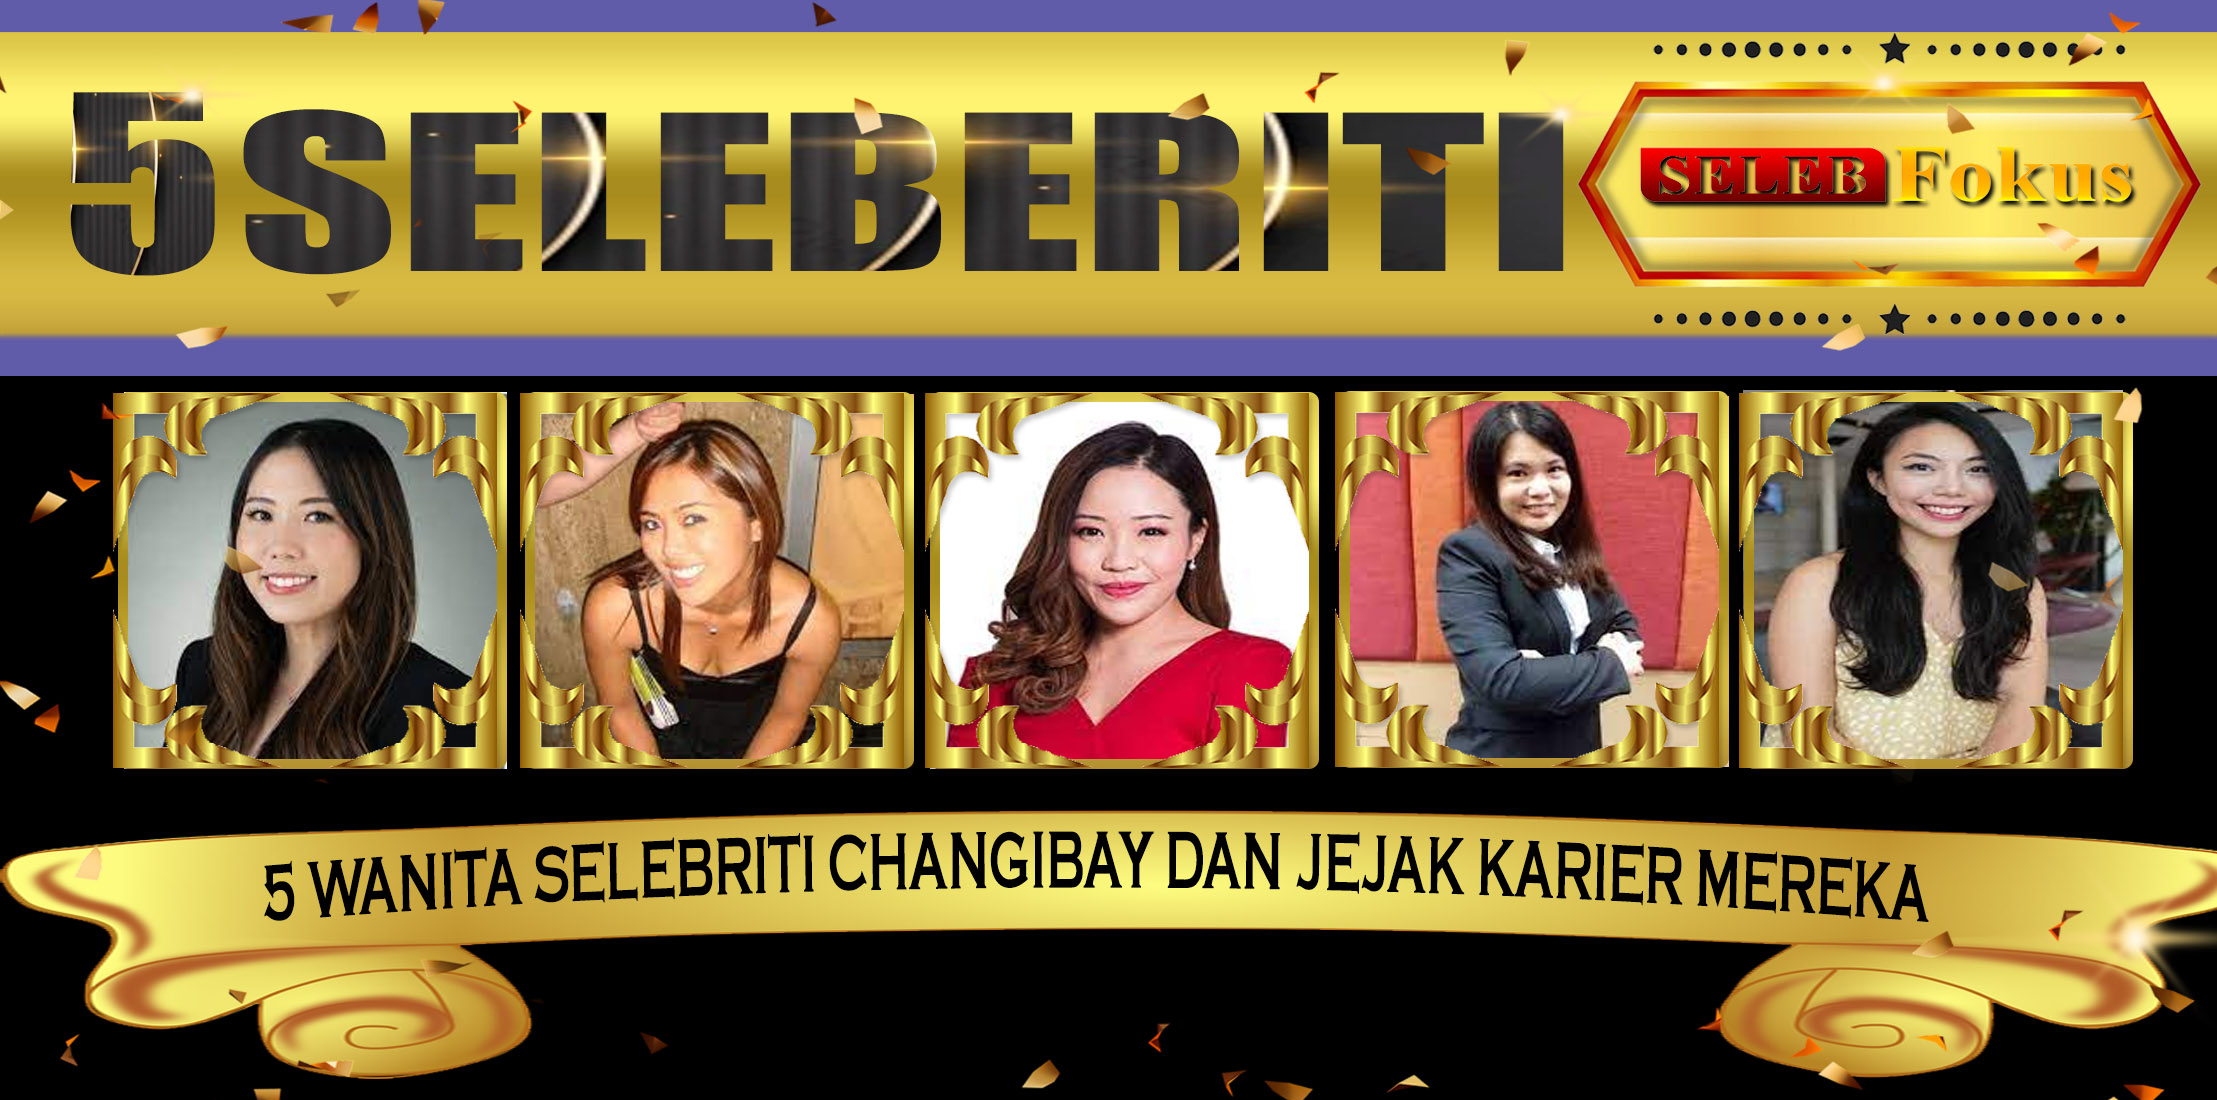 5 Wanita Selebriti ChangiBay dan Jejak Karier Mereka